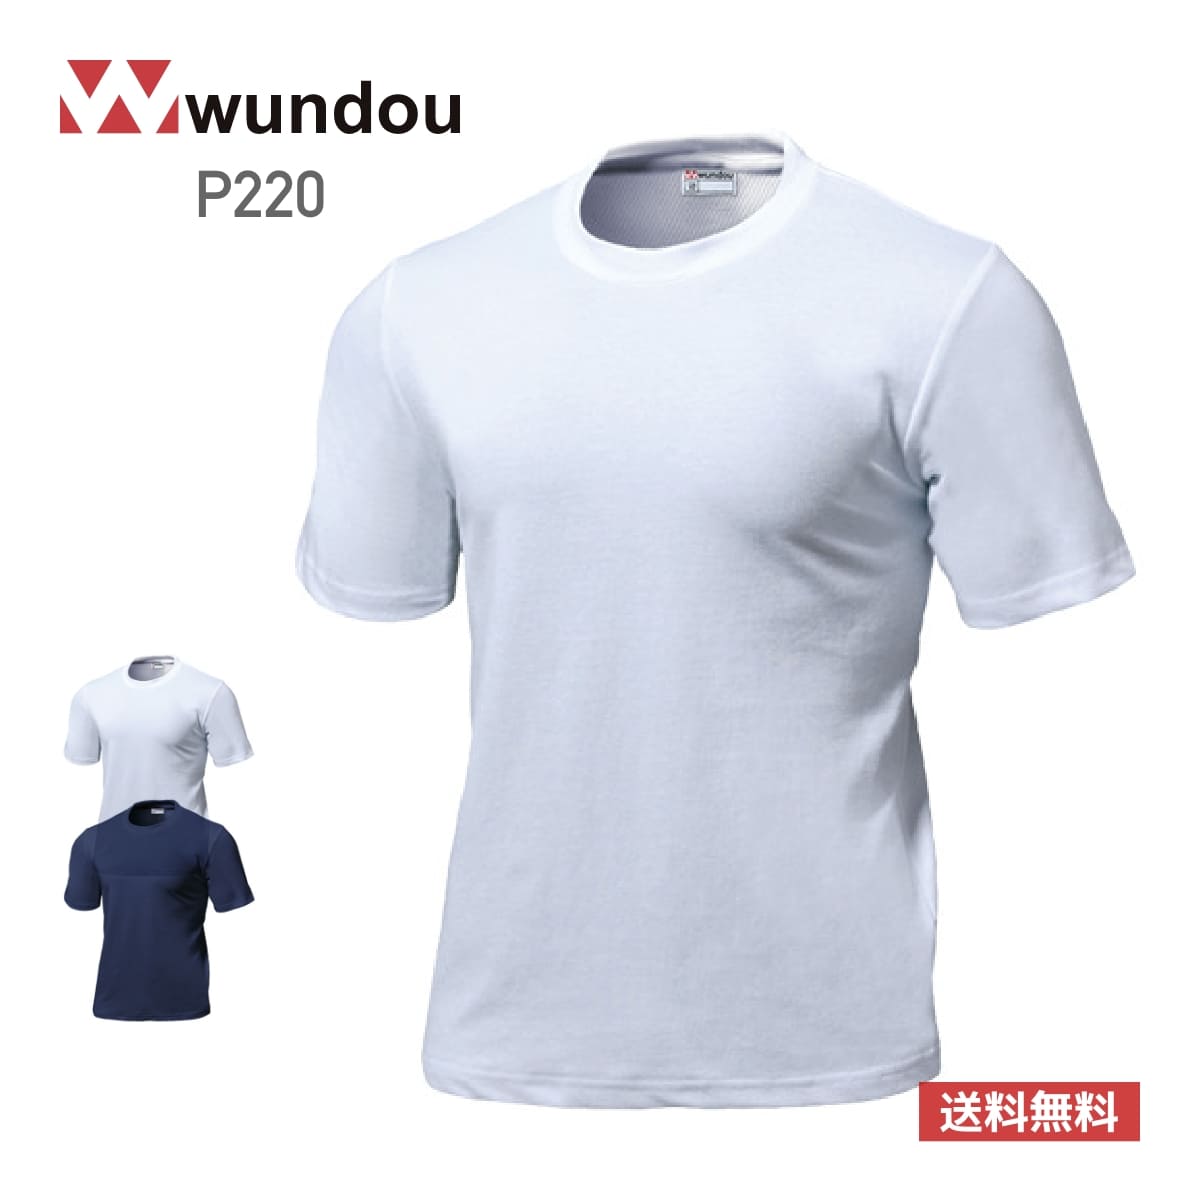 wundouの商品に使えるお得なクーポン配布中！ – Tshirt.stビジネス